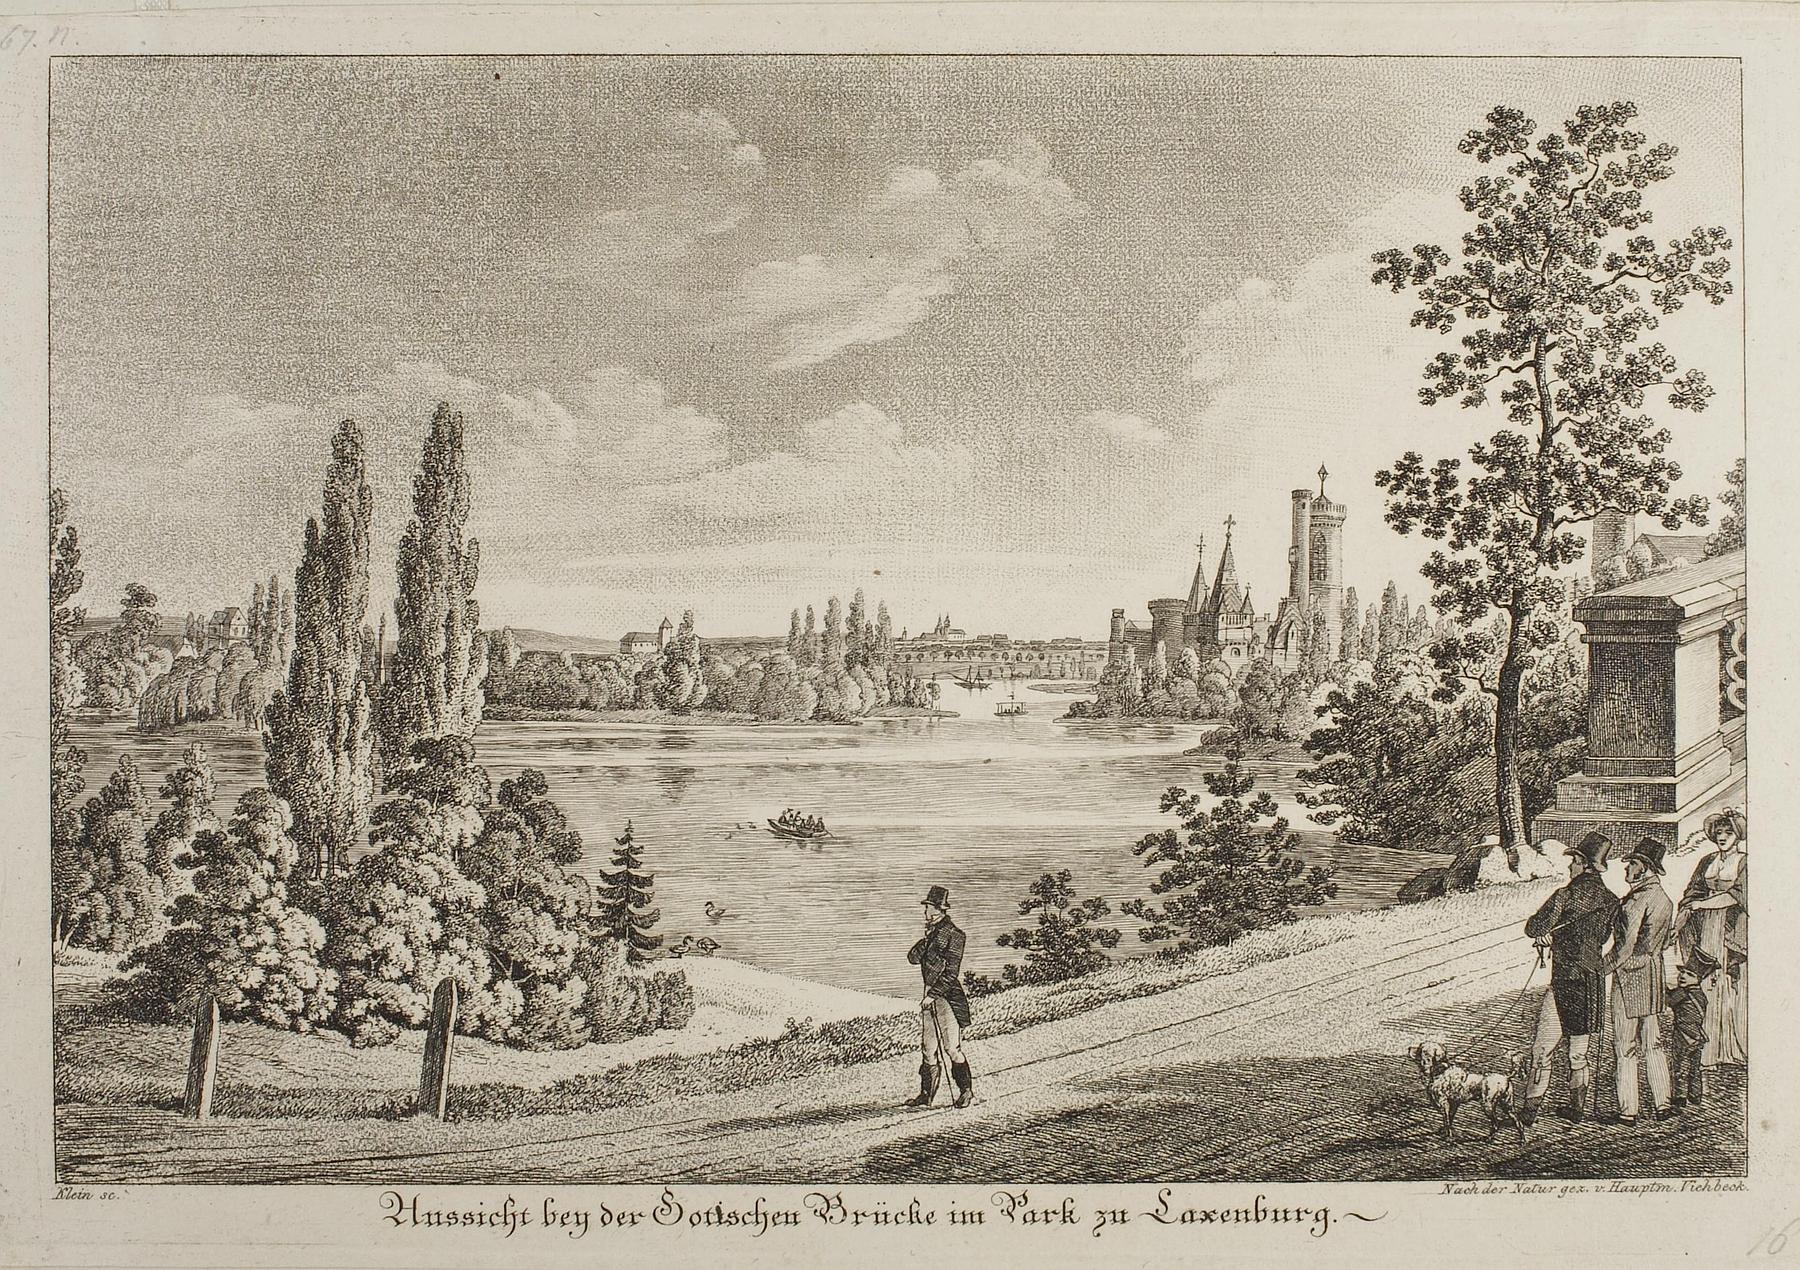 Aussicht bey der Gothischen Brücke am Park zu Laxenburg, E764